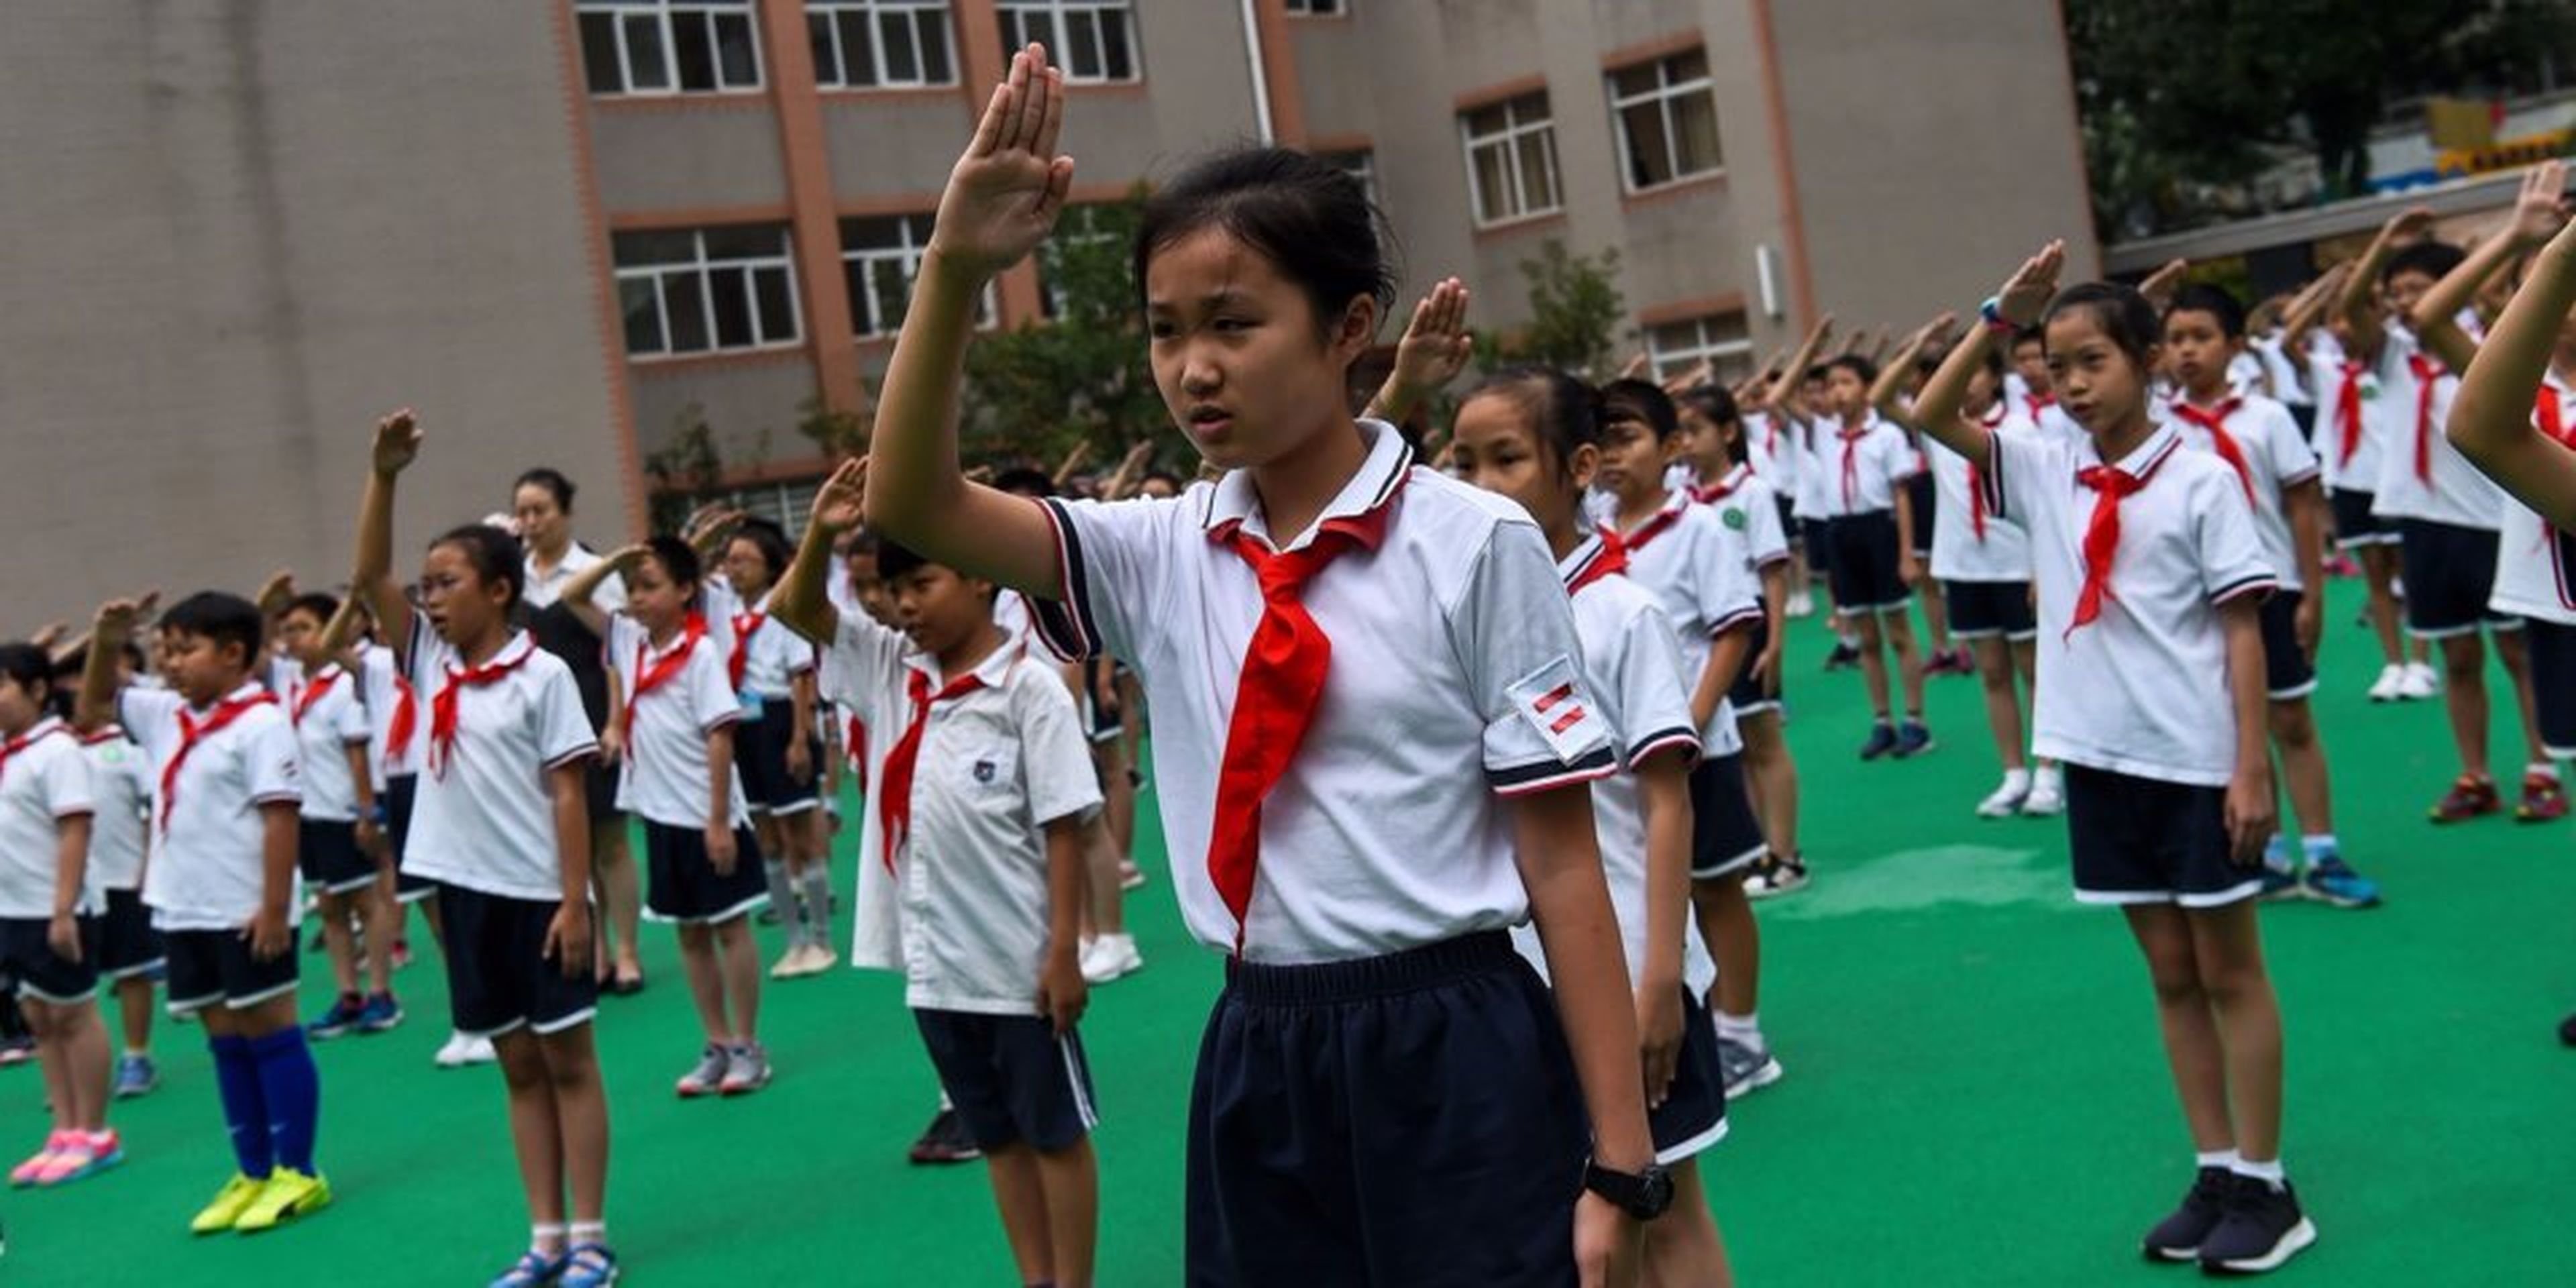 Unos estudiantes cantan el himno nacional en el patio de recreo durante la jura de bandera en una escuela de Shanghai el 27 de septiembre de 2017.